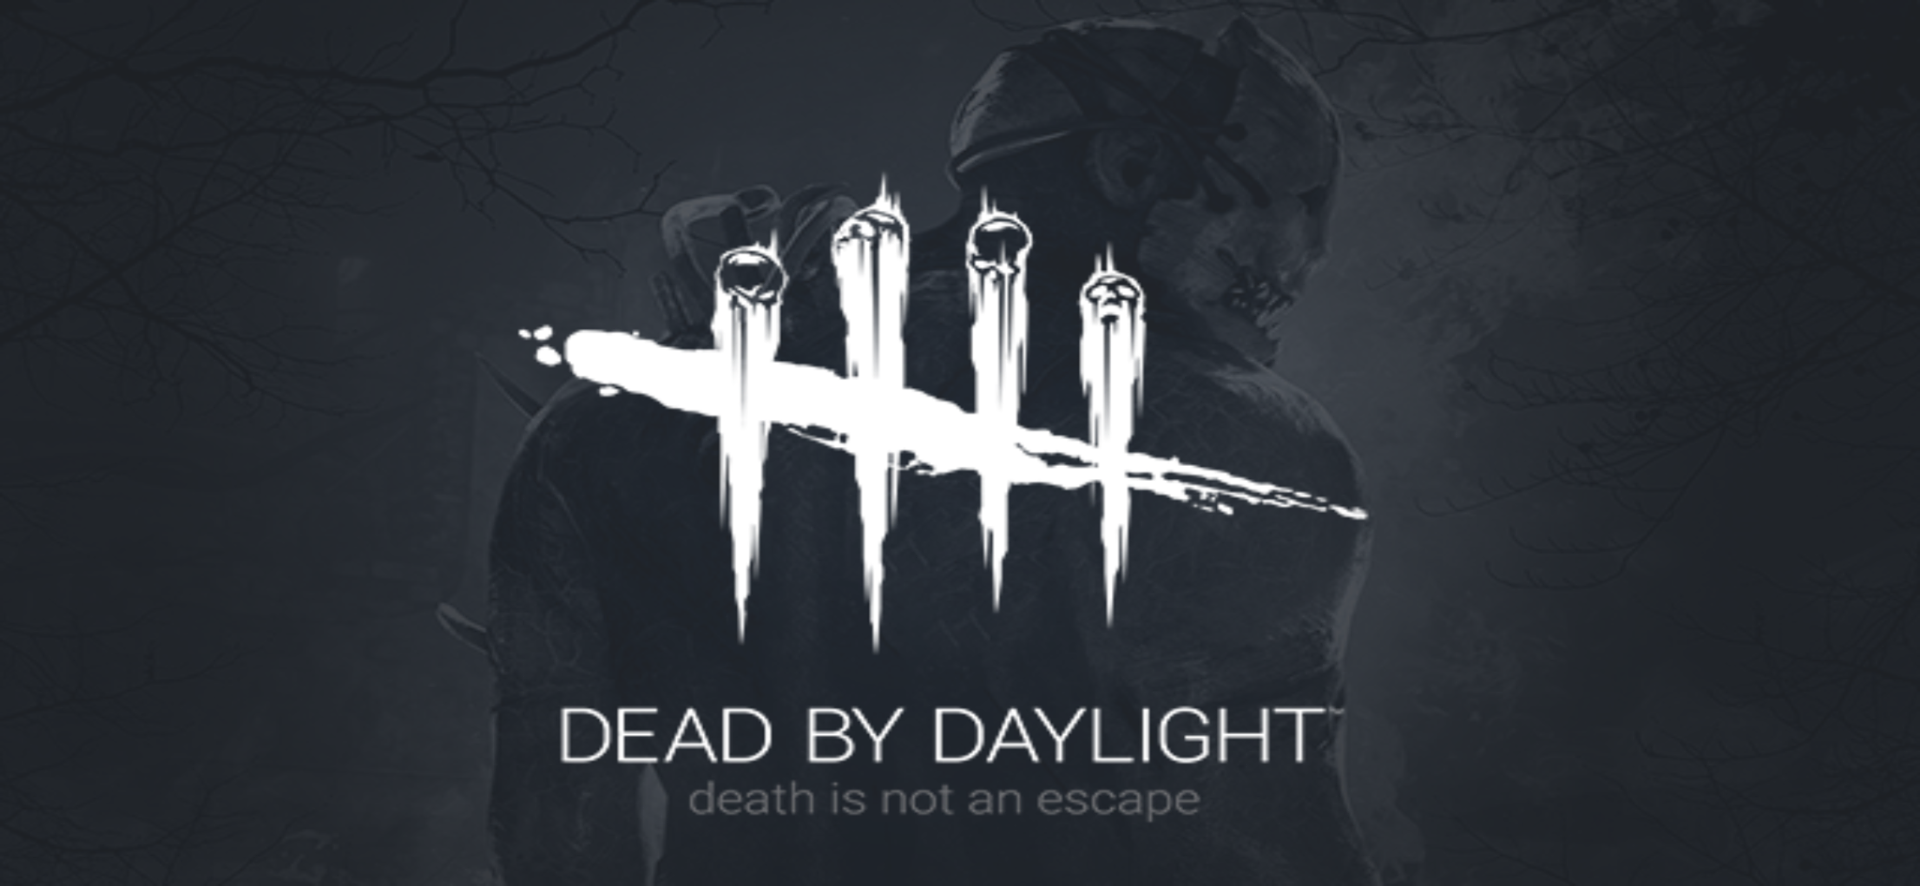 เปิดเกมเพลย์ Dead By Daylight Mobile ก่อนเปิดให้บริการทั่วโลก เร็ว ๆ นี้ พร้อมลงทะเบียนล่วงหน้า